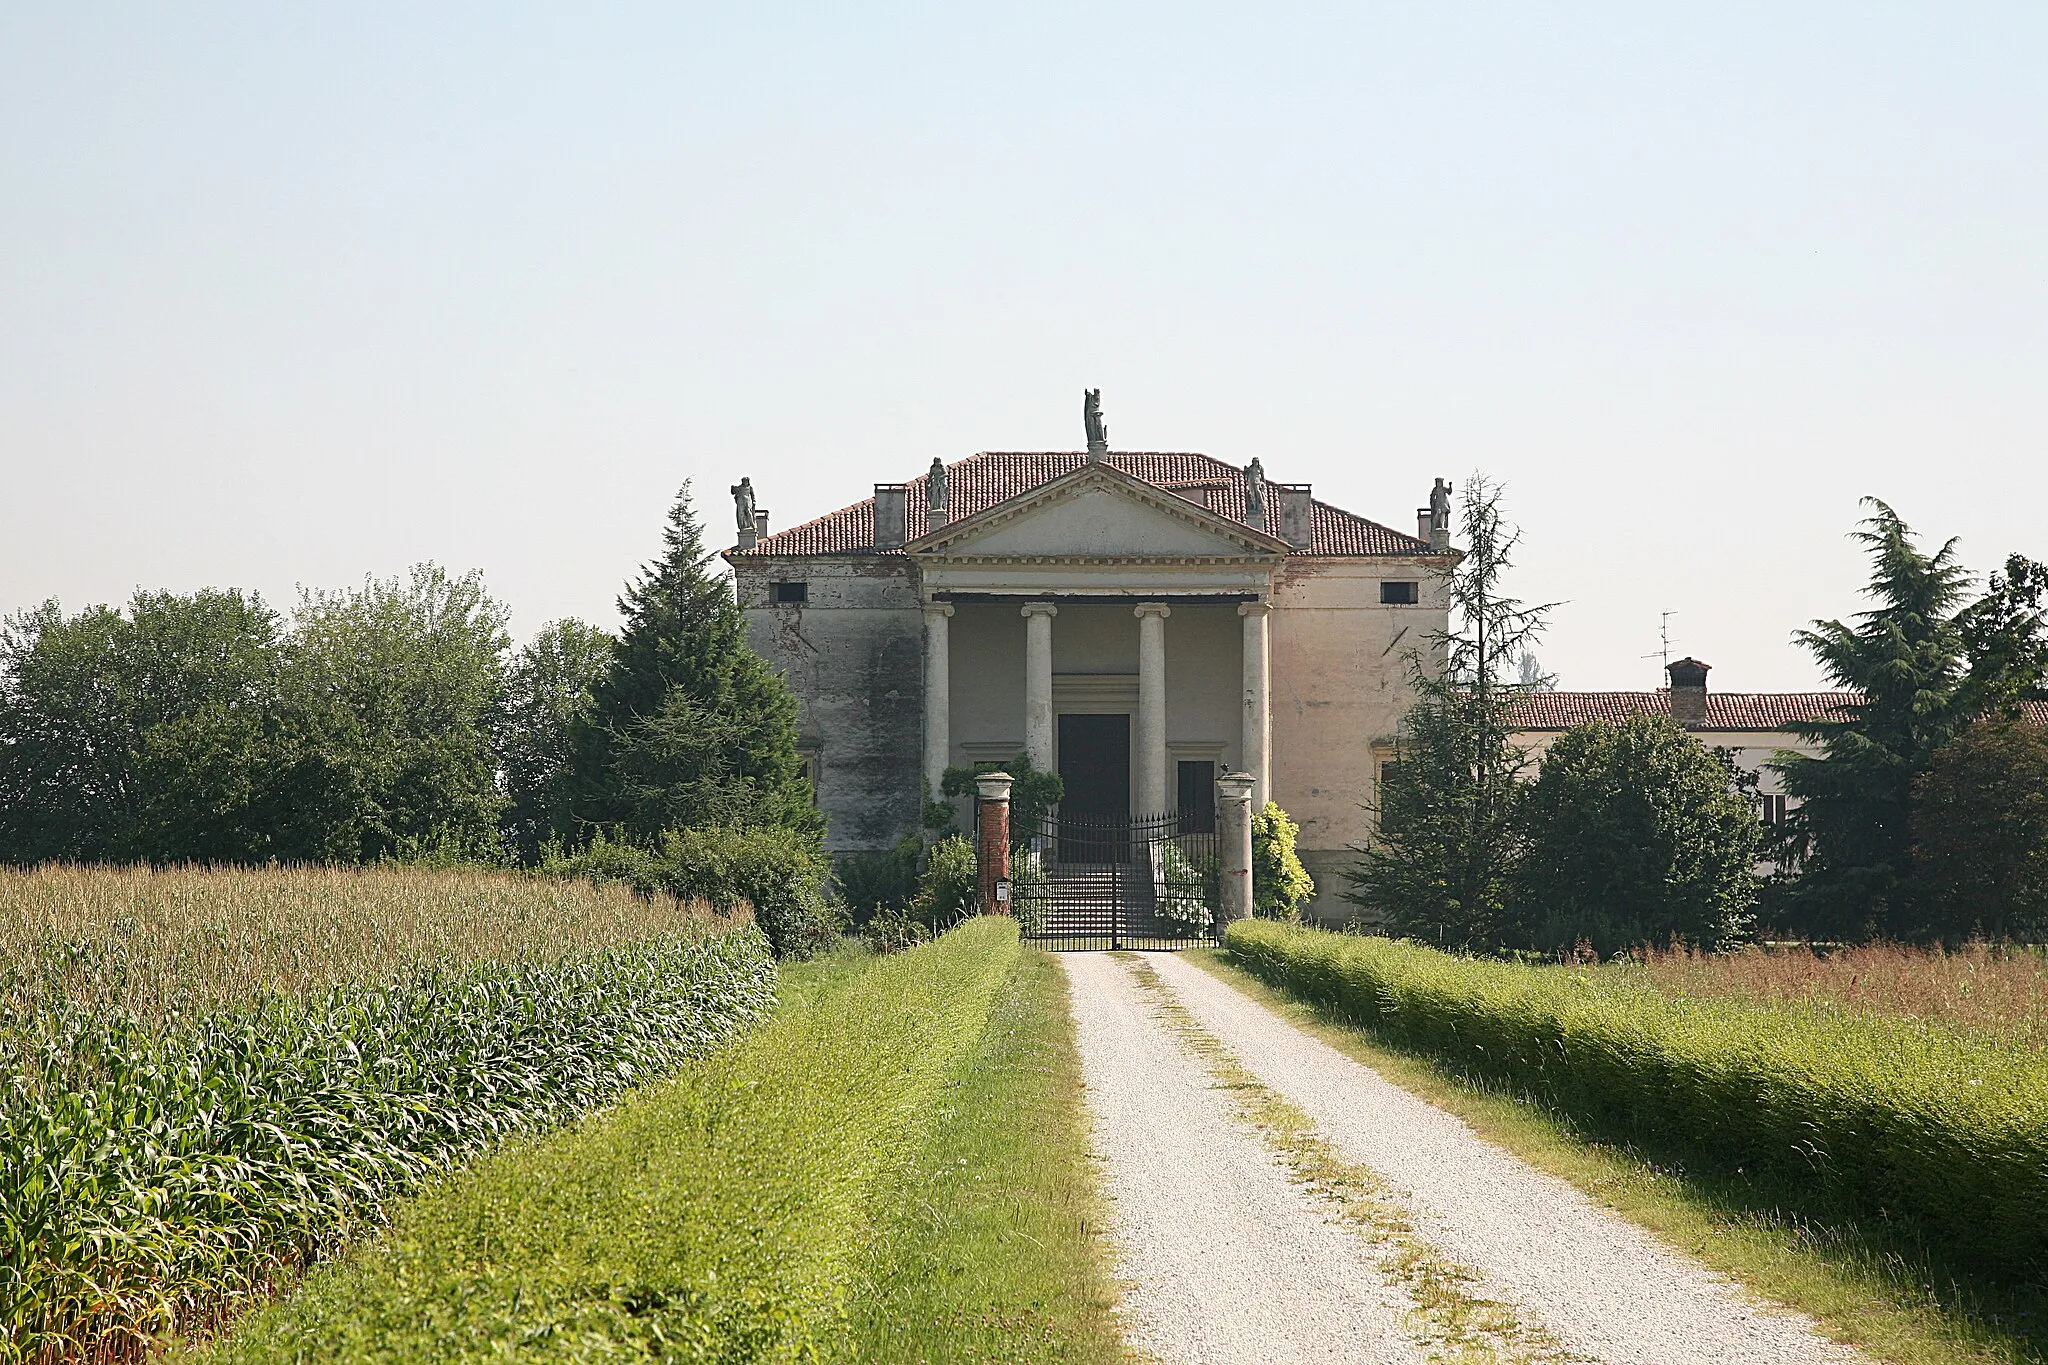 Photo showing: Villa Chiericati Da Porta Rigo by Andrea Palladio